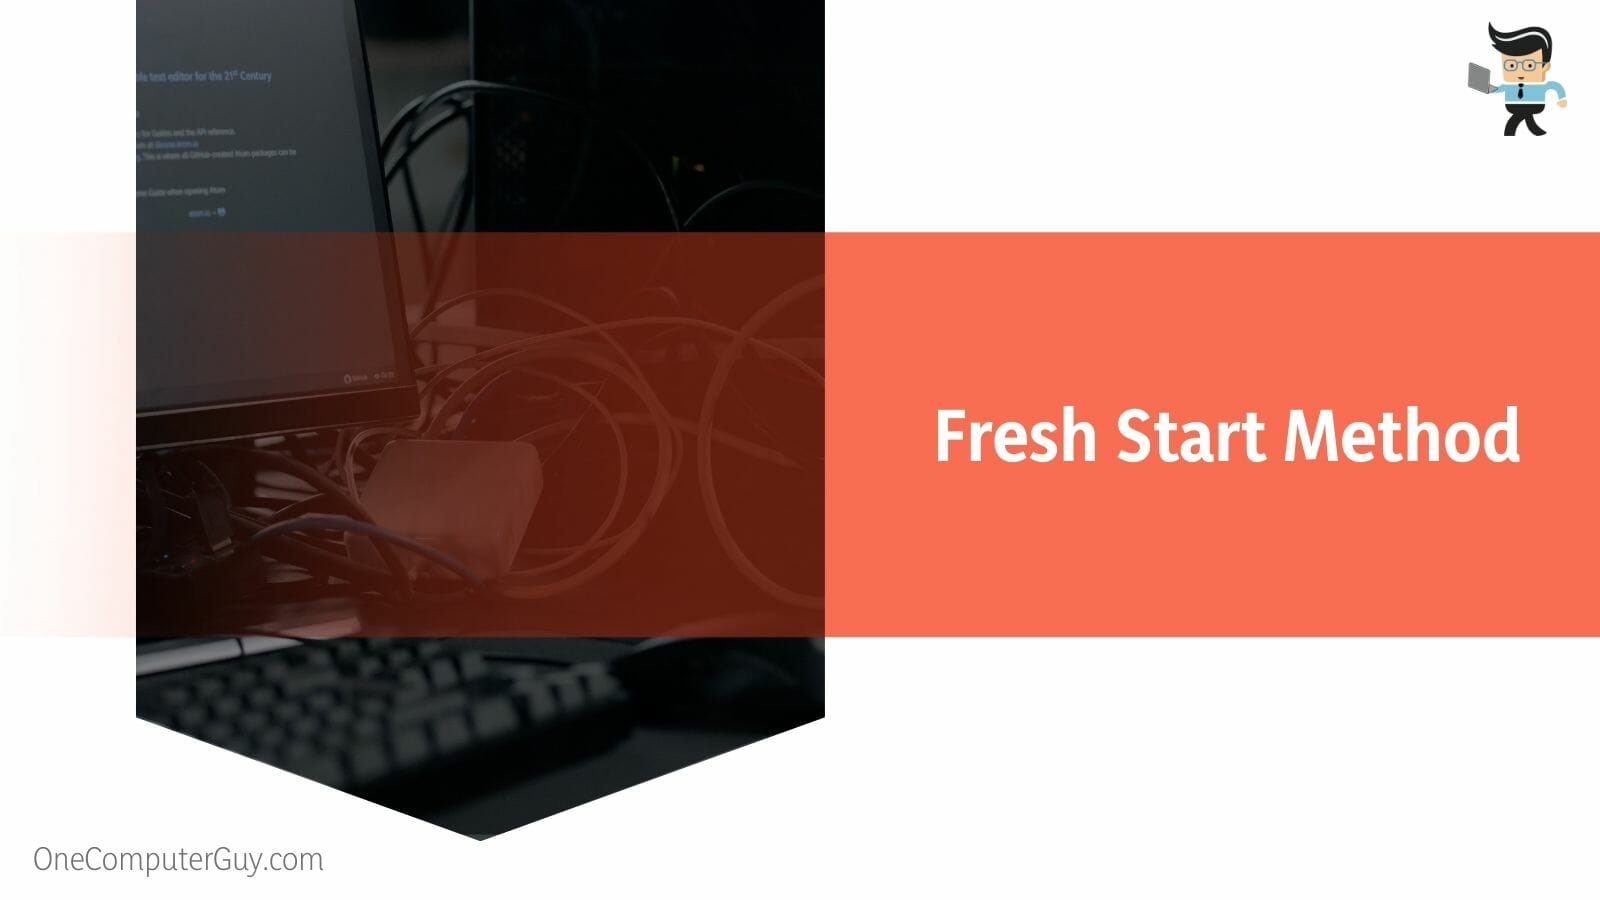 Fresh Start Method of PC